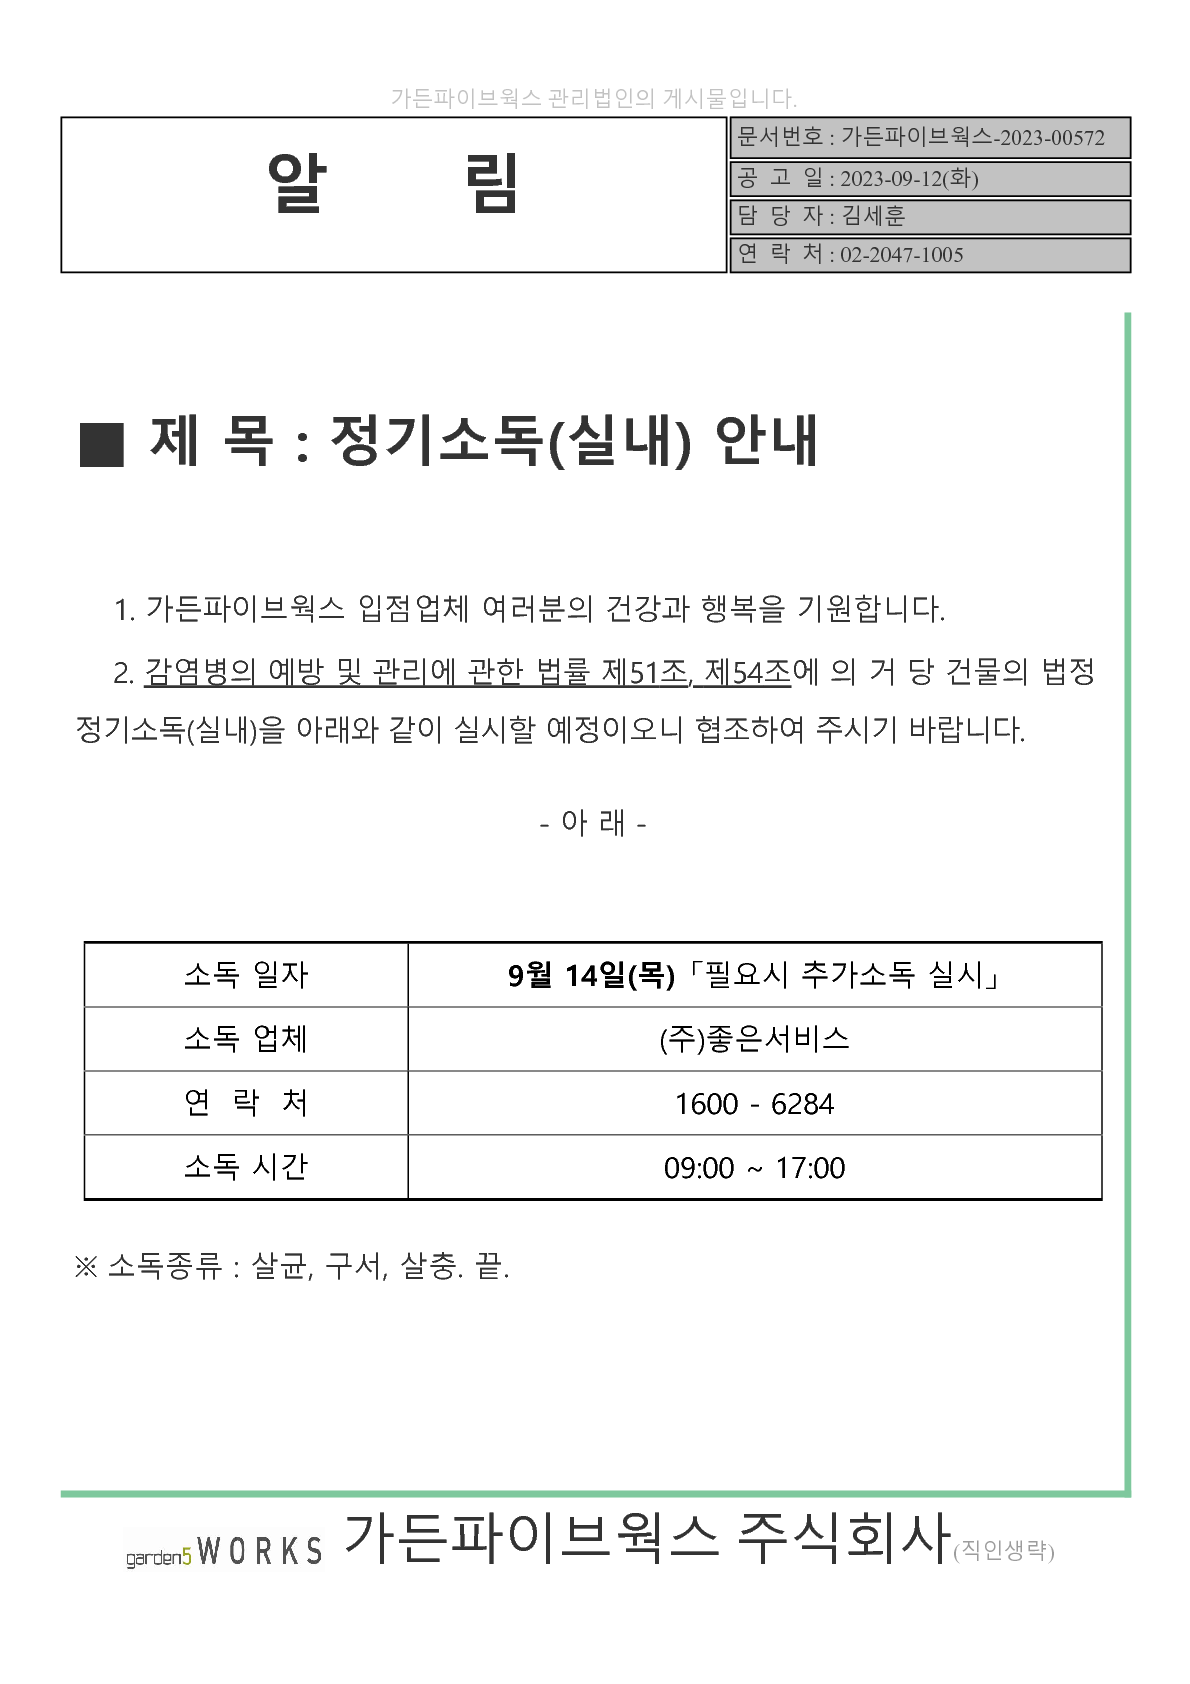 공고문(소독)-2023.09.12(좋은서비스 4회)_1.png